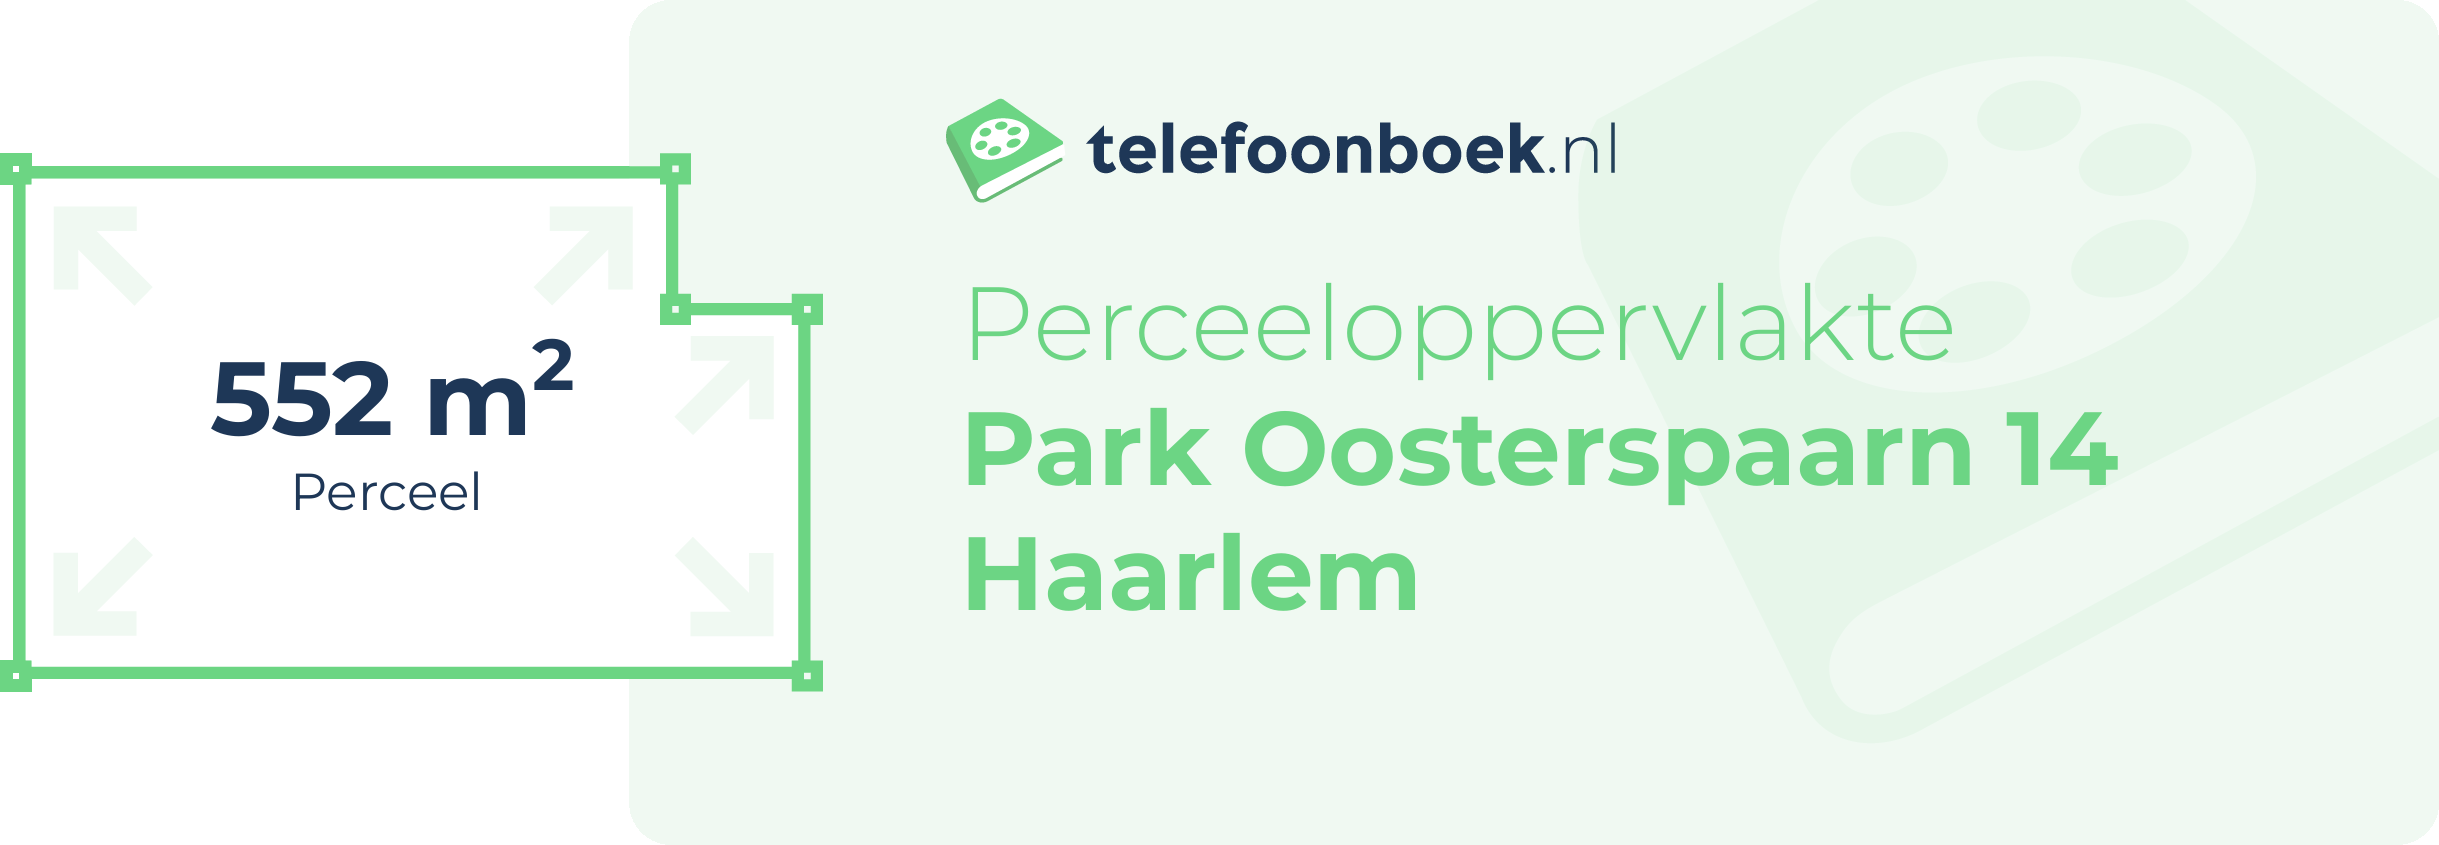 Perceeloppervlakte Park Oosterspaarn 14 Haarlem